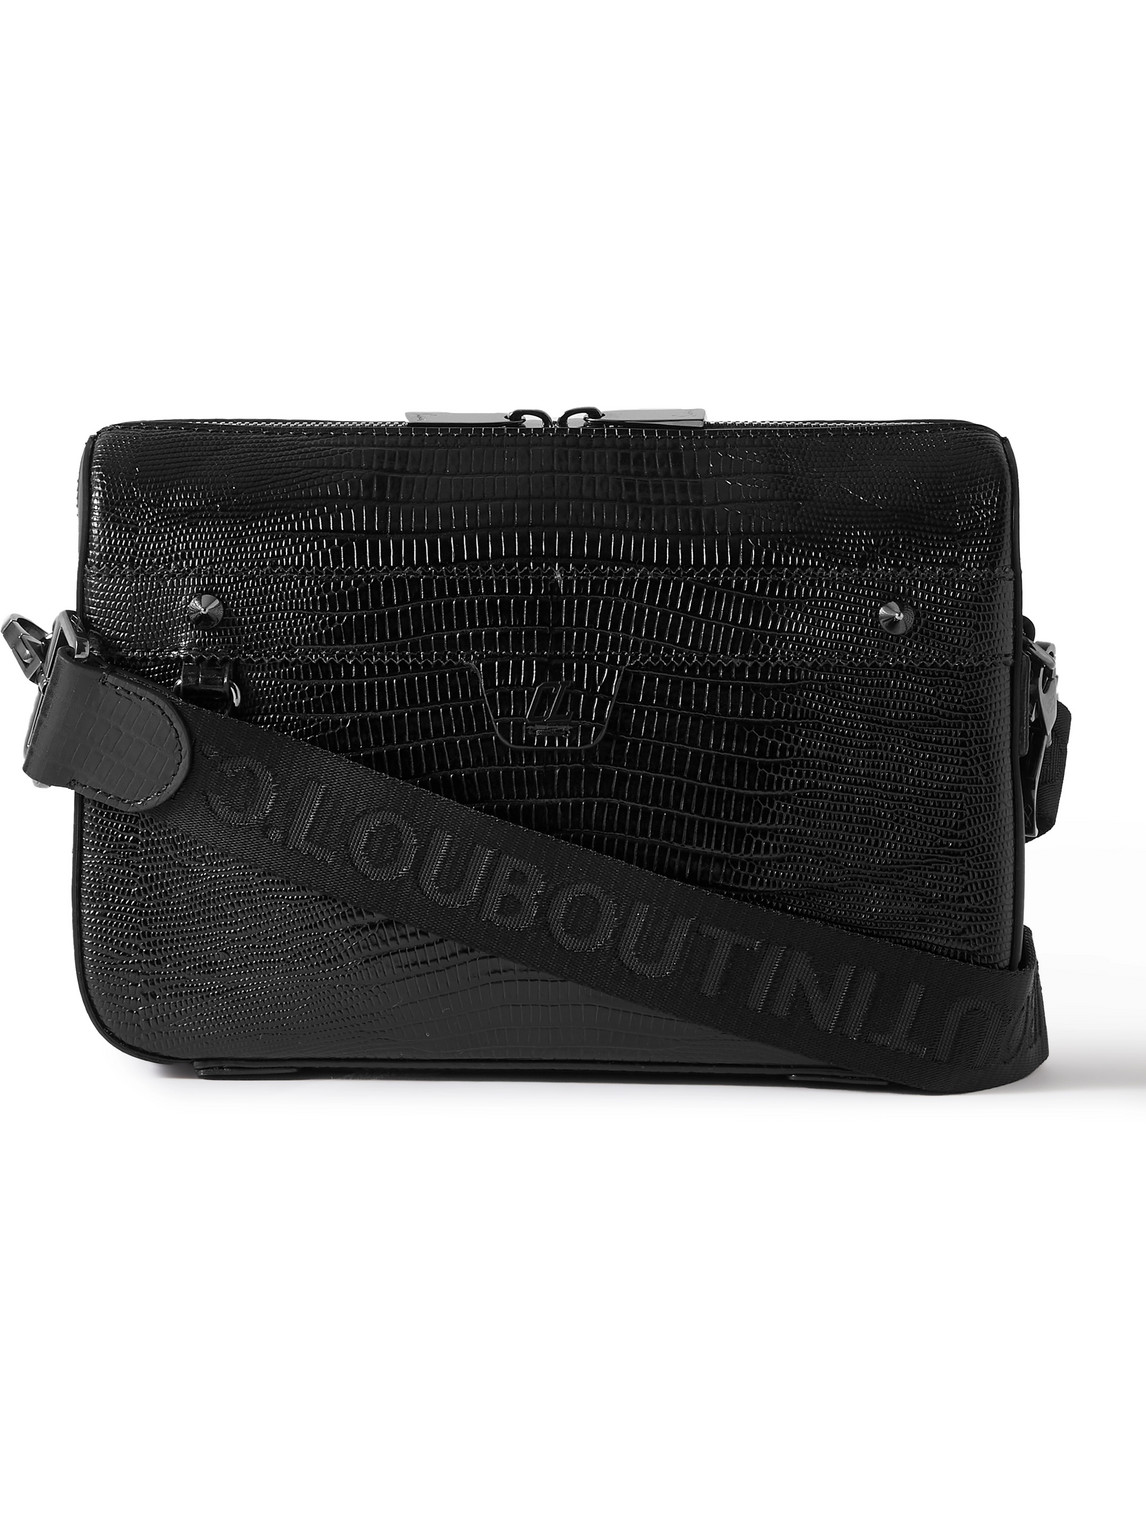 Christian Louboutin Ruisbuddy Studded Rubber-trimmed Full-grain Leather Messenger Bag In Black